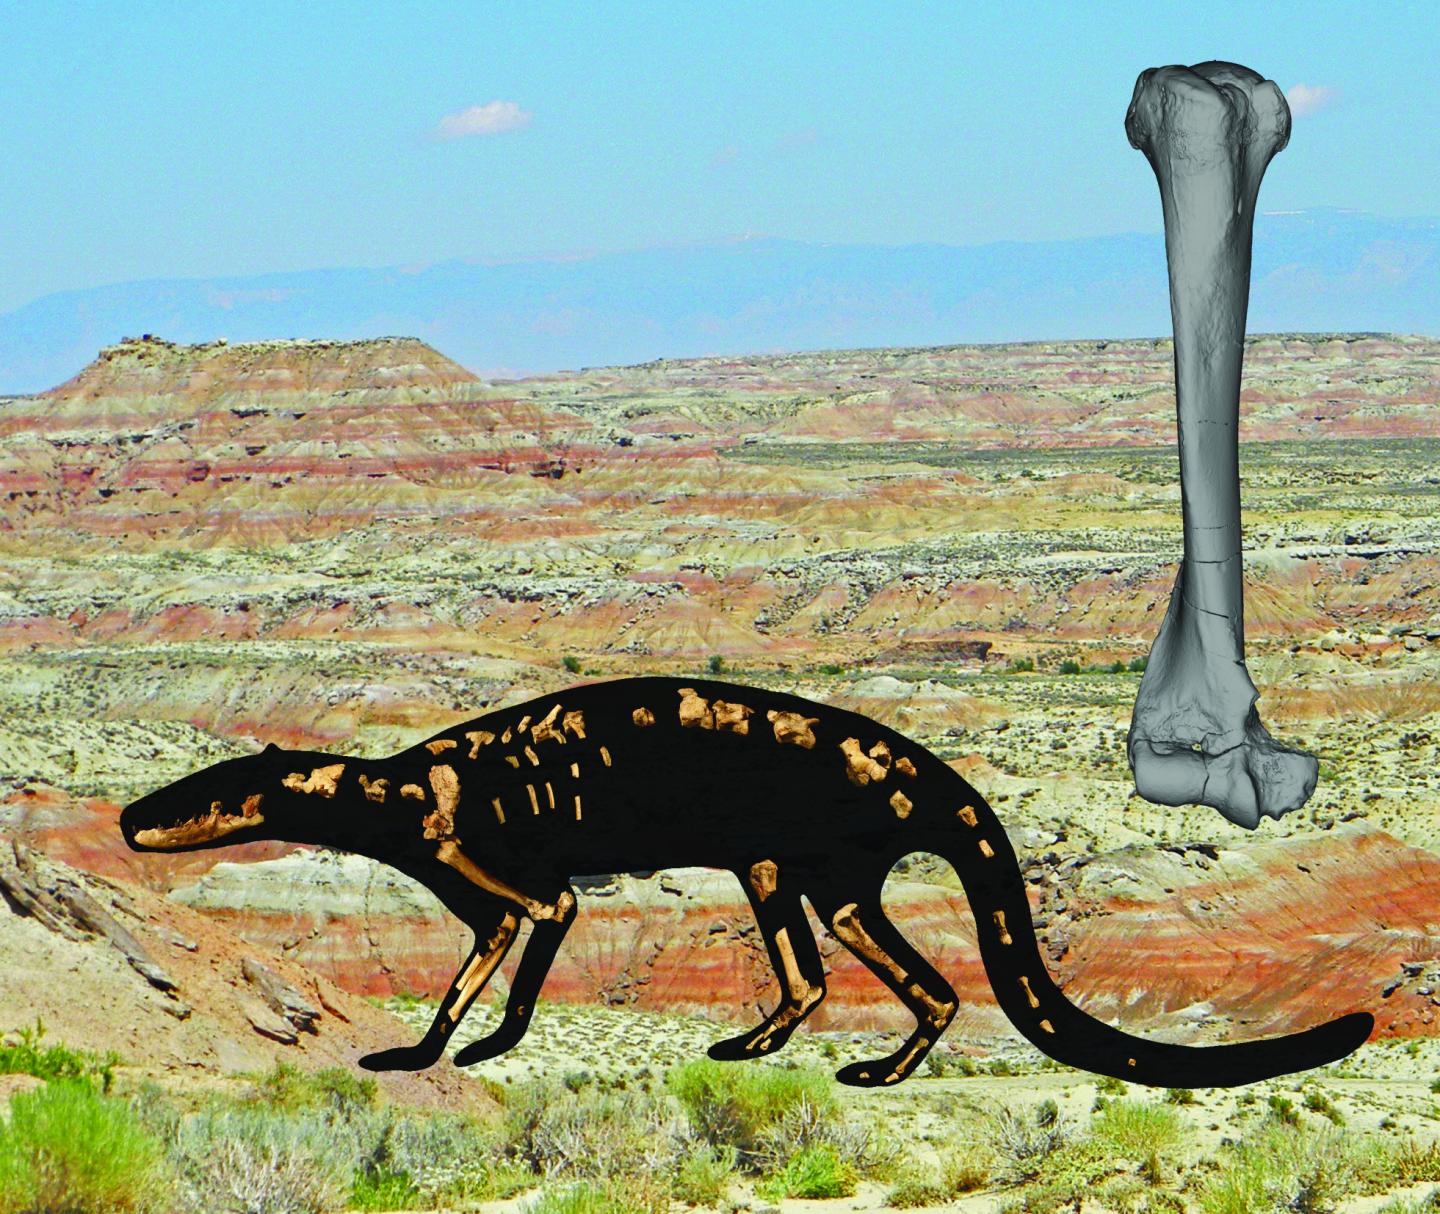 Náčrtek nalezené části kostry vsazený do obrysu celého živočicha  (Zack, S. P., and K. D. Rose. 2015. The postcranial skeleton of Galecyon: evidence for morphological and locomotor diversity in early Hyaenodontidae (Mammalia, Hyaenodontida),  Journal of Vertebrate Paleontology. DOI: 10.1080/02724634.2014.1001492). Vpravo nahoře dlouhá kost hrudní končetiny (humerus). Na pozadí pohled na  naleziště - lokalitu Willwood v jižní části povodí řeky Bighorn ve Wyomingu.